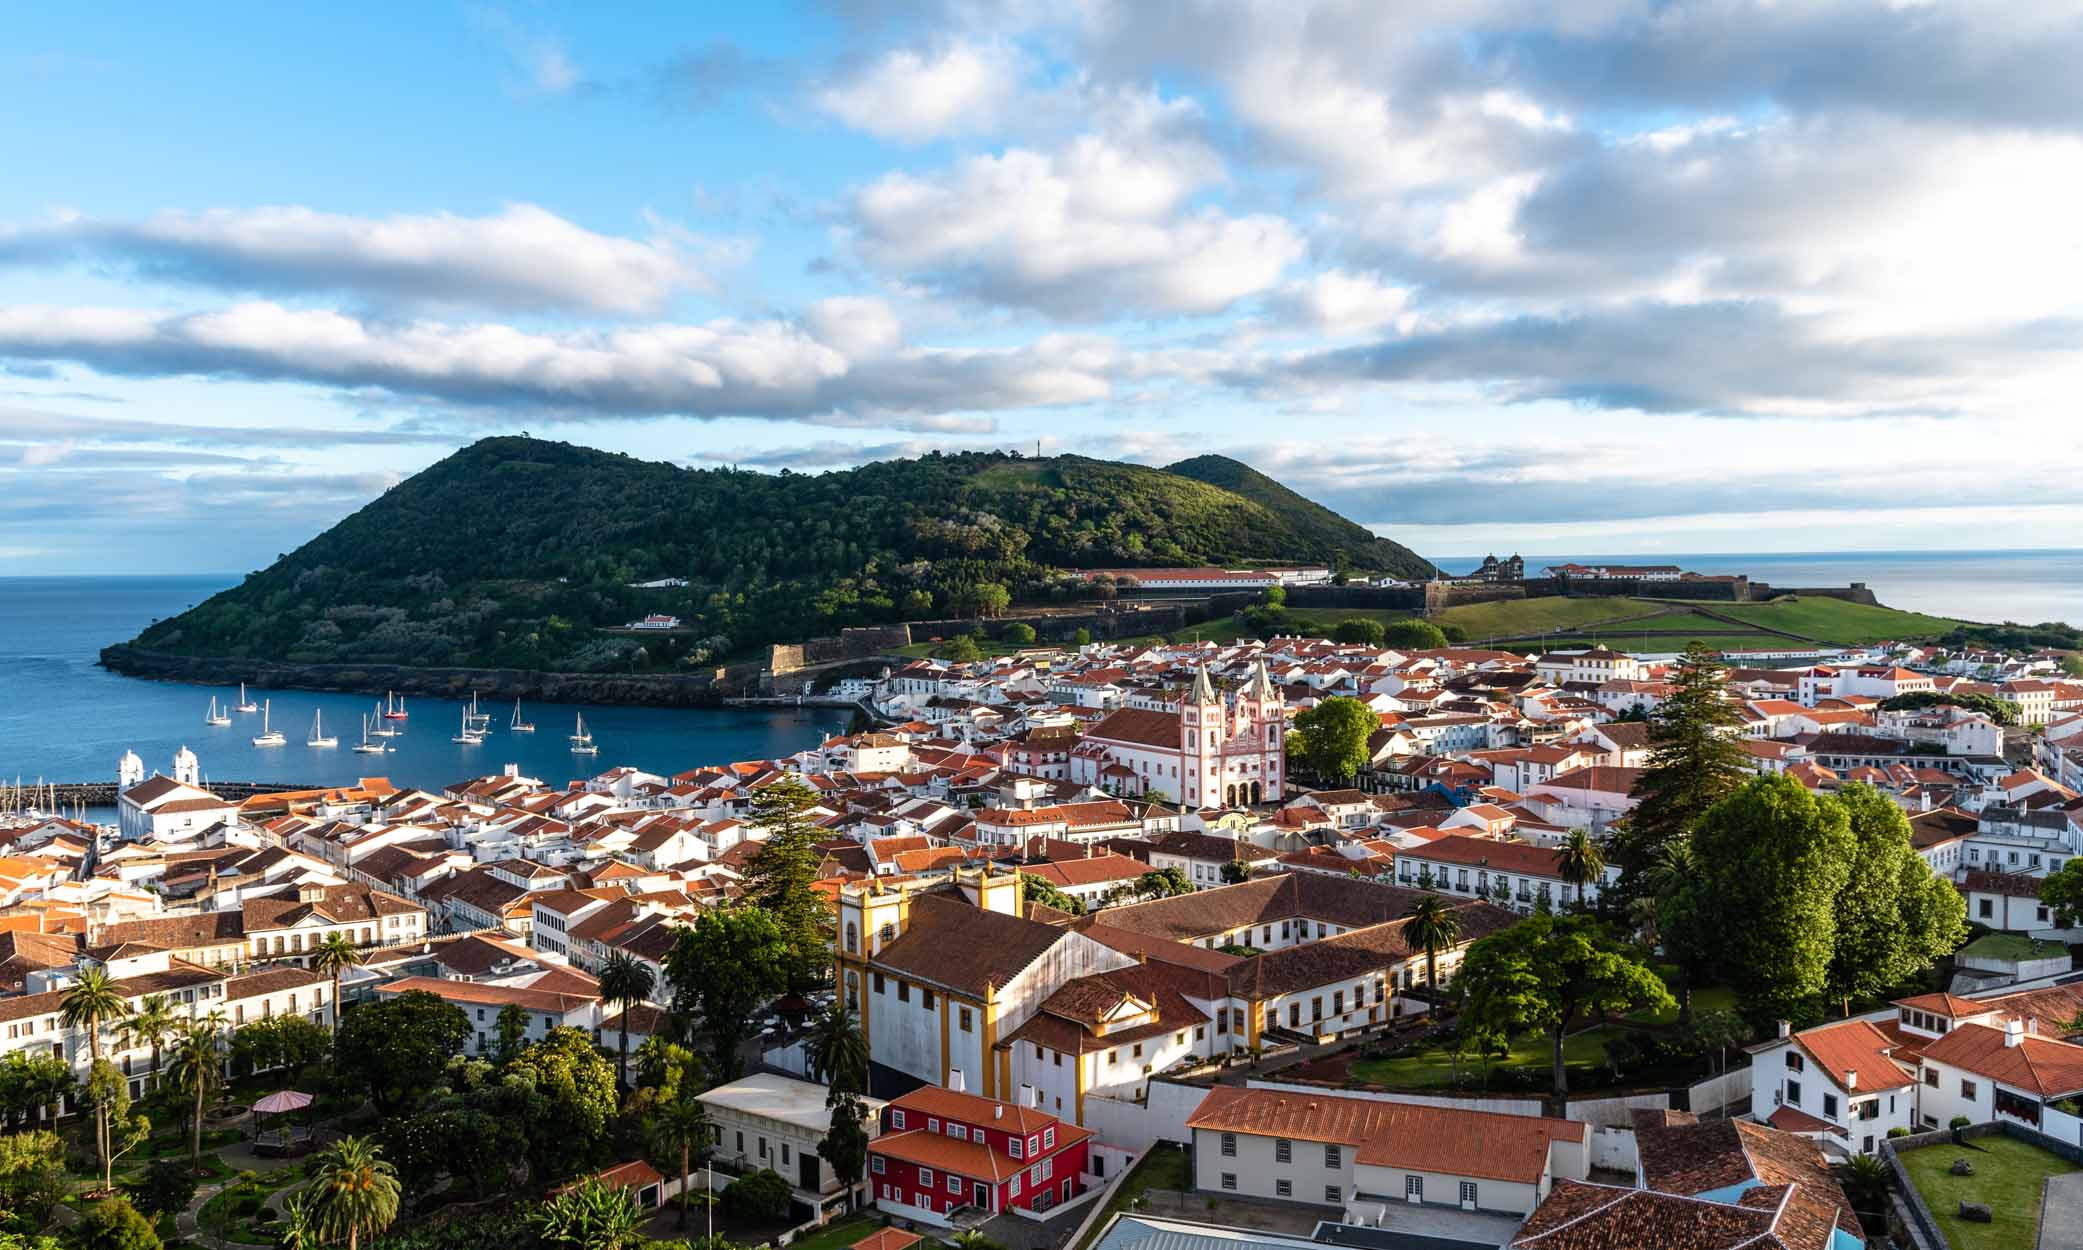 Portekiz Altın Vizesi, Portekiz vatandaşlığına giden bir yoldur.